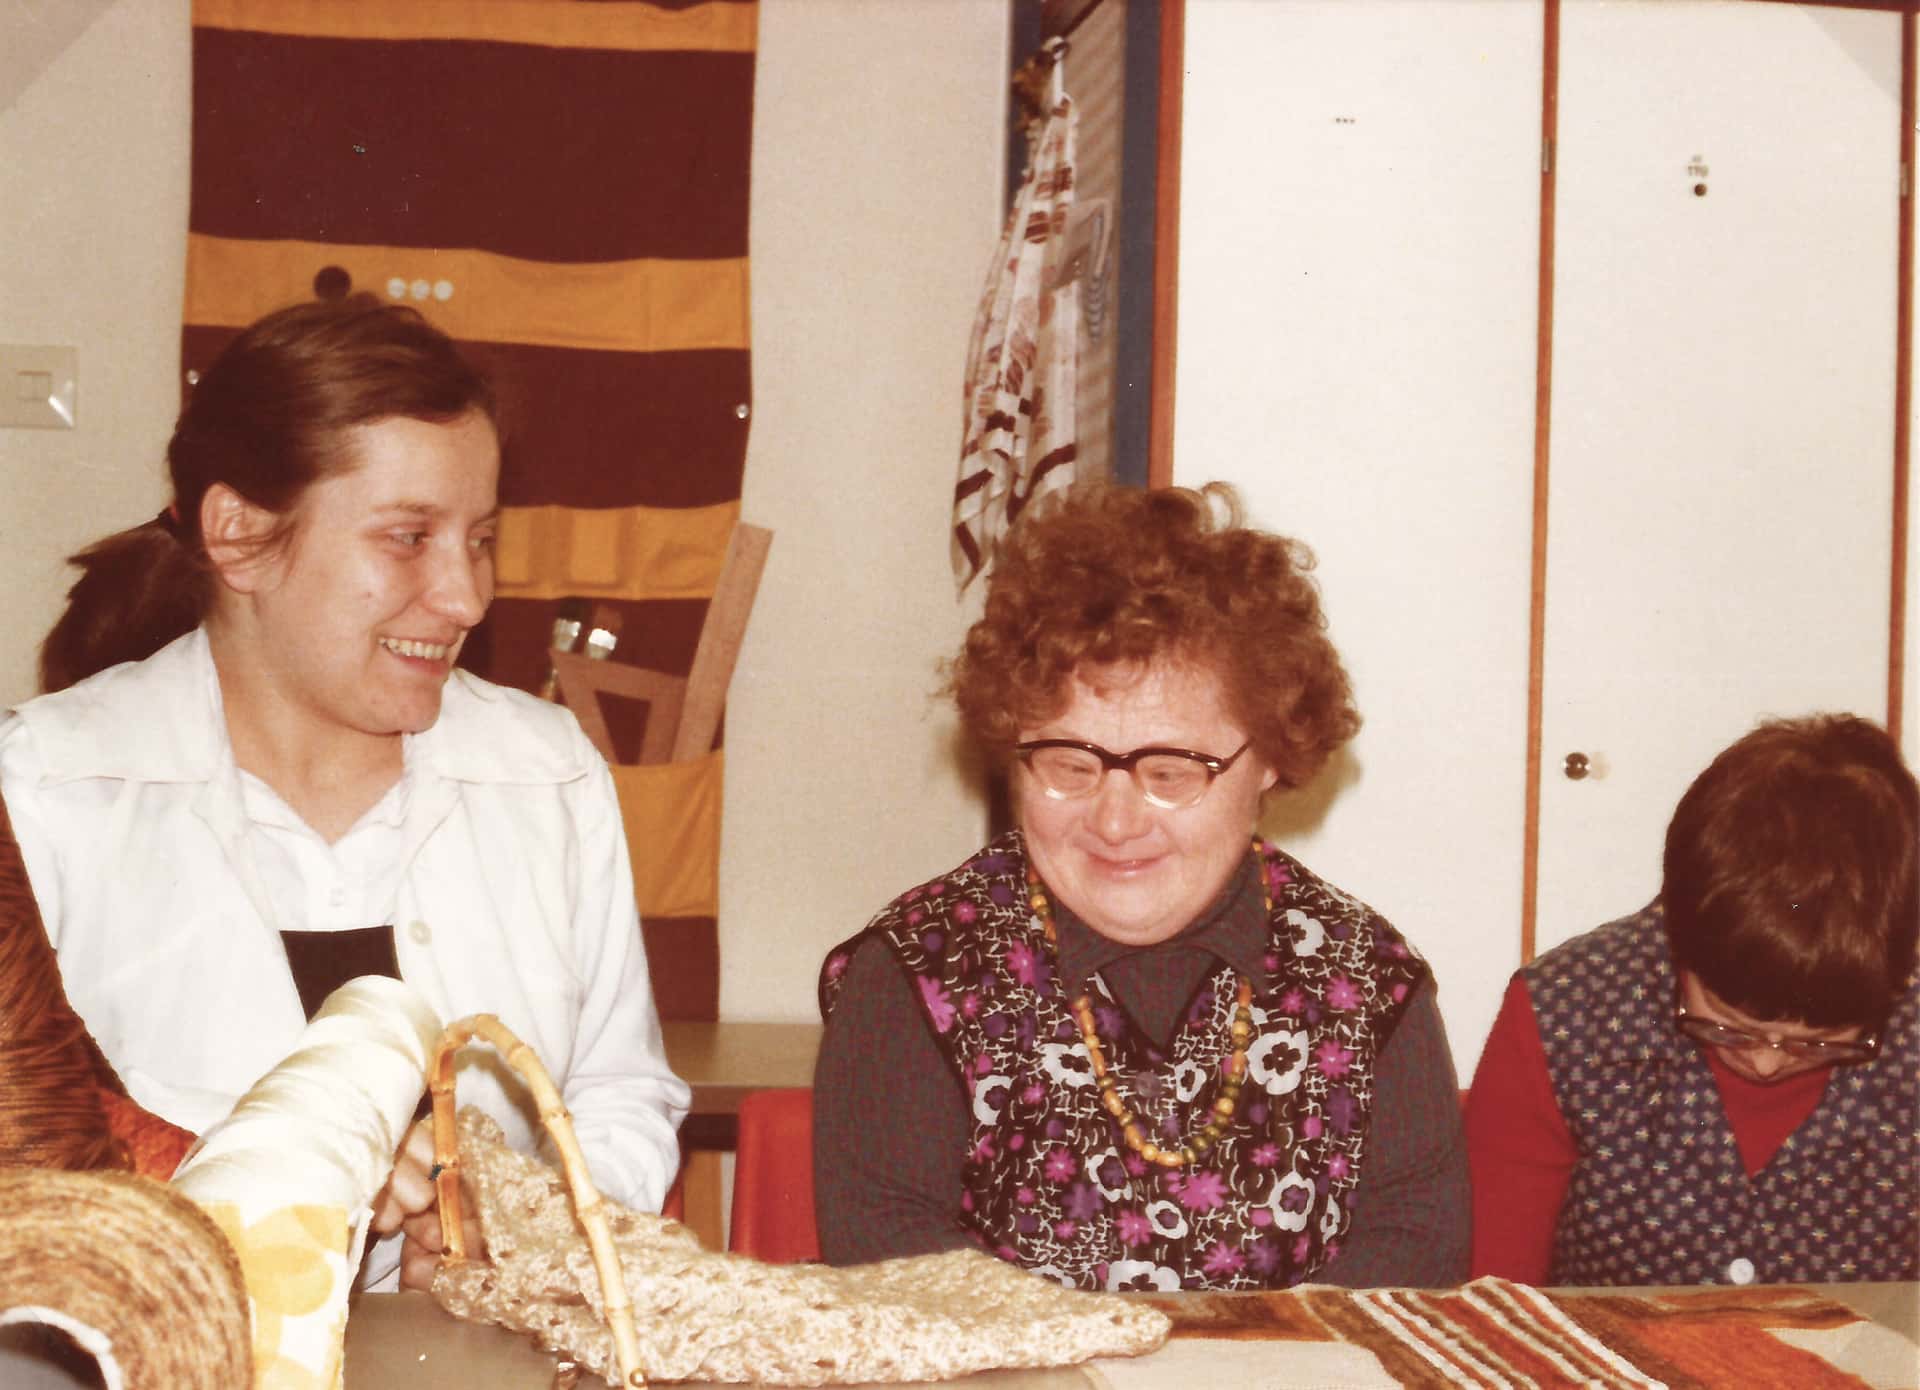 Drei Frauen sitzen an Tisch, eine davon mit Downsyndrom, altes Bild aus dem Jahr 1960